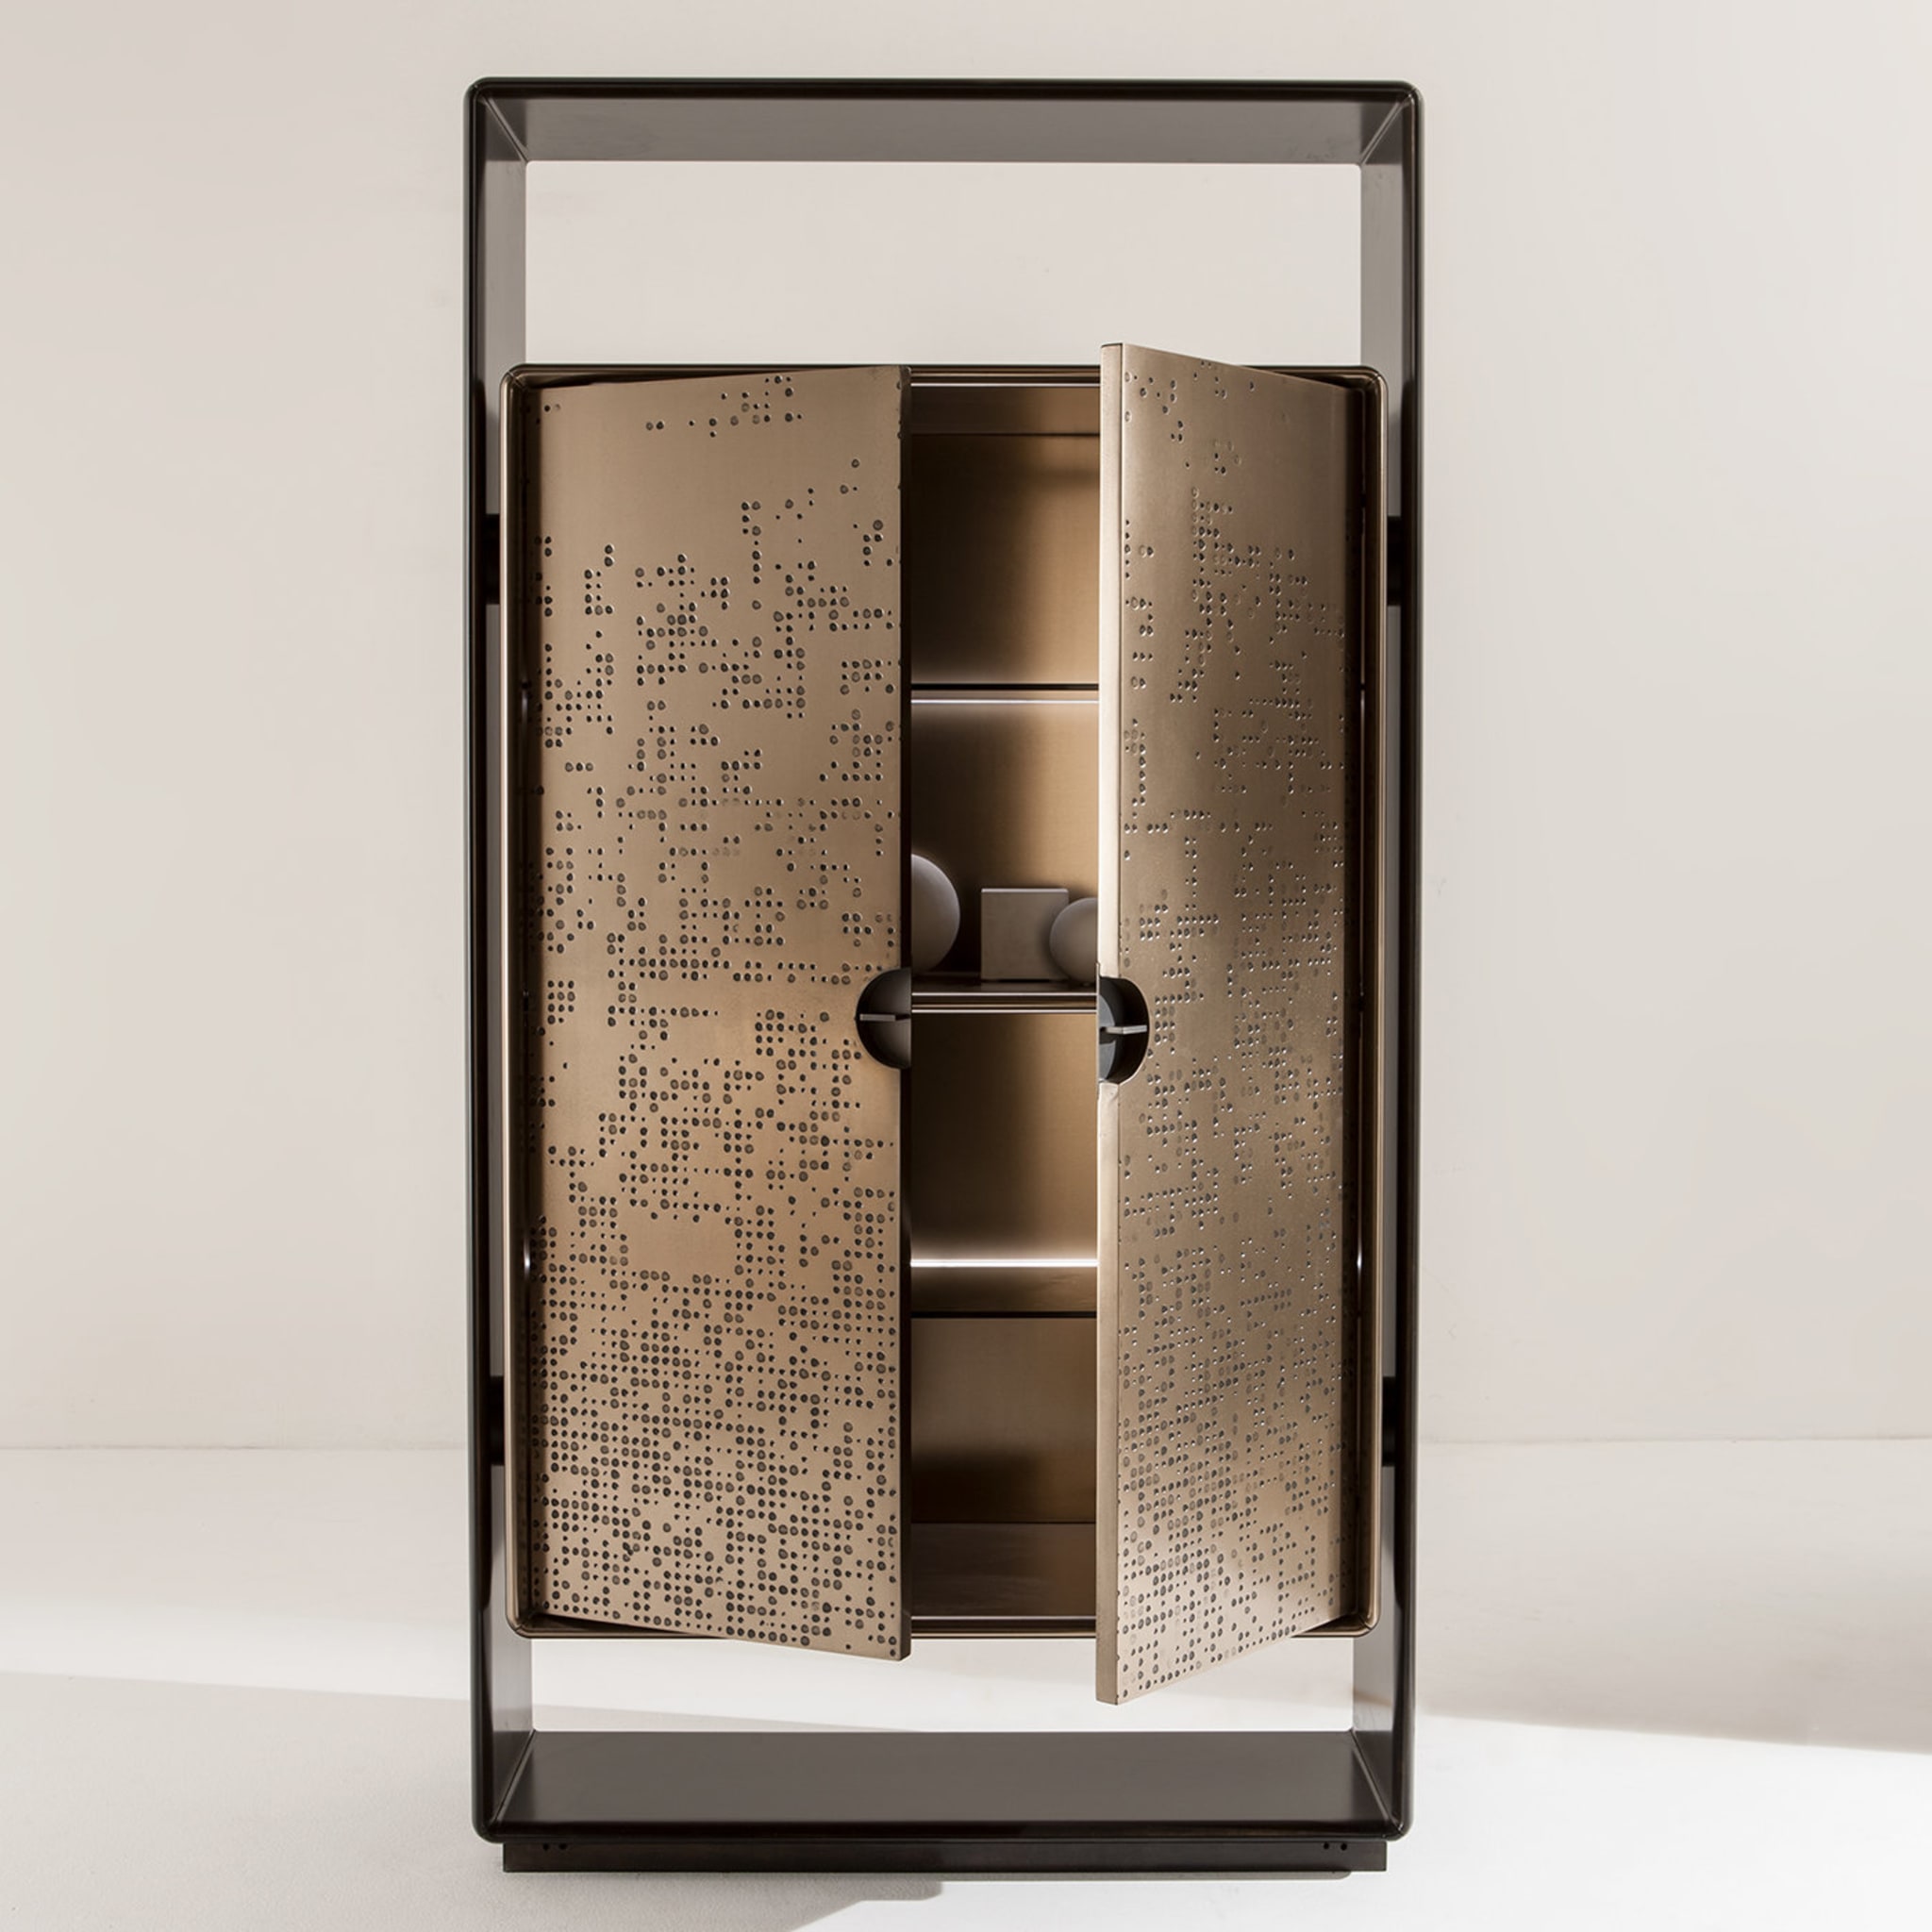 Talento Unlimited Cabinet by Edoardo Colzani Design - Alternative view 2